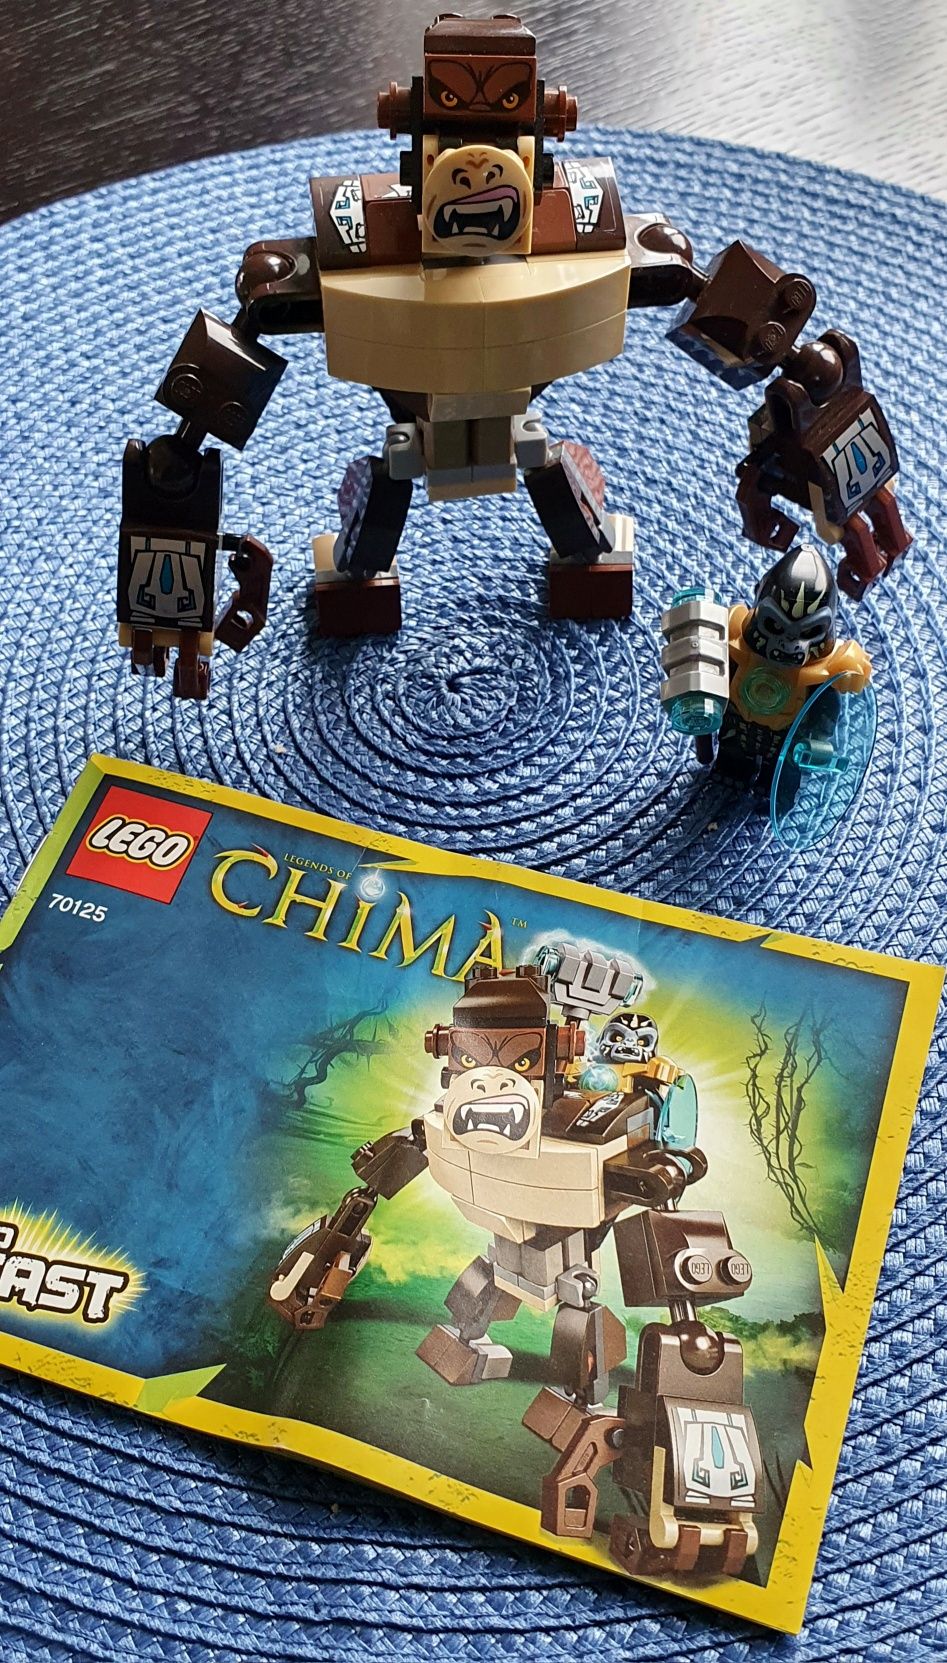 LEGO Chima 70125 Goryl Legend Beast